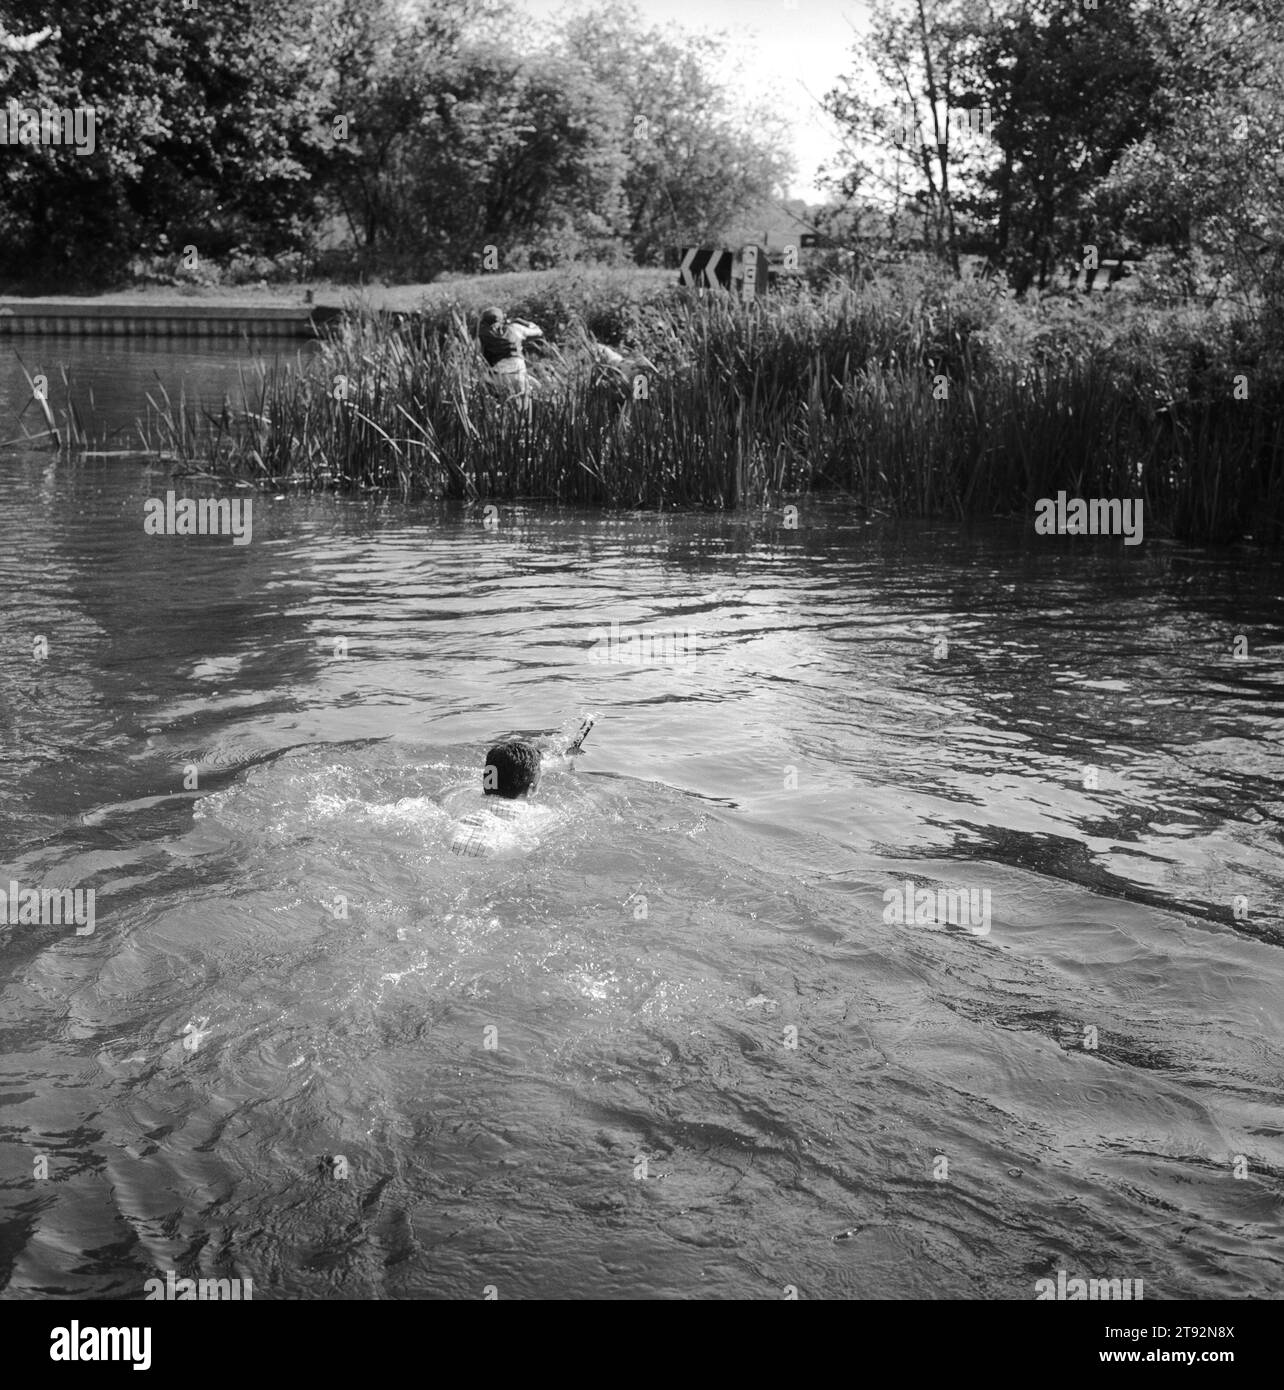 Mink Hunting Regno Unito. I Valley Minkhounds, Whipper-in, Simon Haines, nuotano attraverso il fiume Kennet seguendo i cani che stanno inseguendo la loro cava. Vicino ad Aldermaston, Berkshire. 2002, 2000 Inghilterra HOMER SYKES Foto Stock